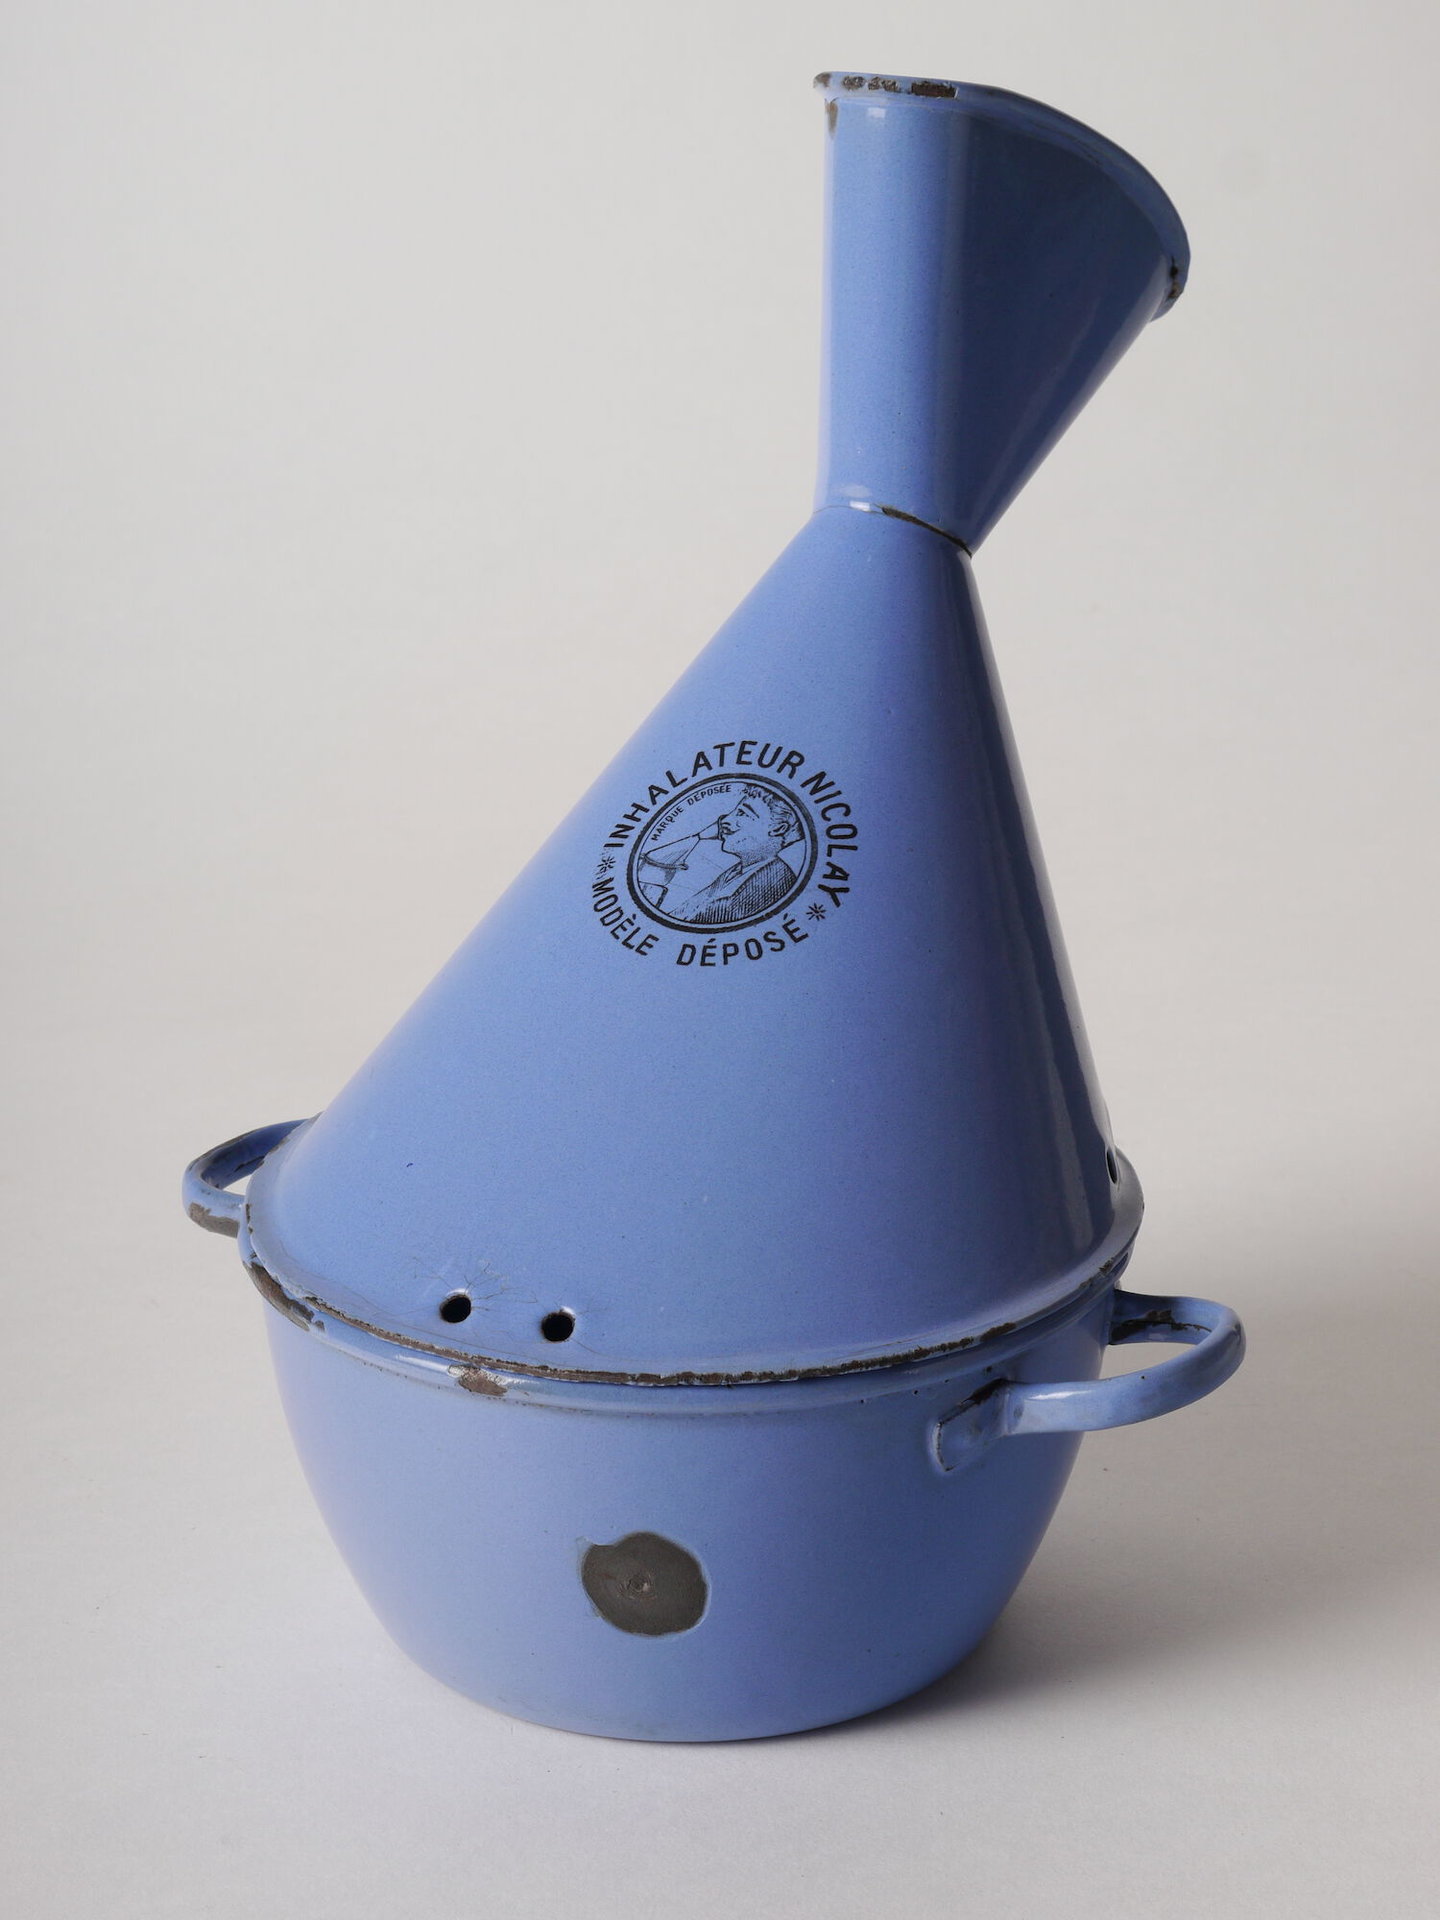 Inhalator van het merk Nicolay met blauwe emaillaag